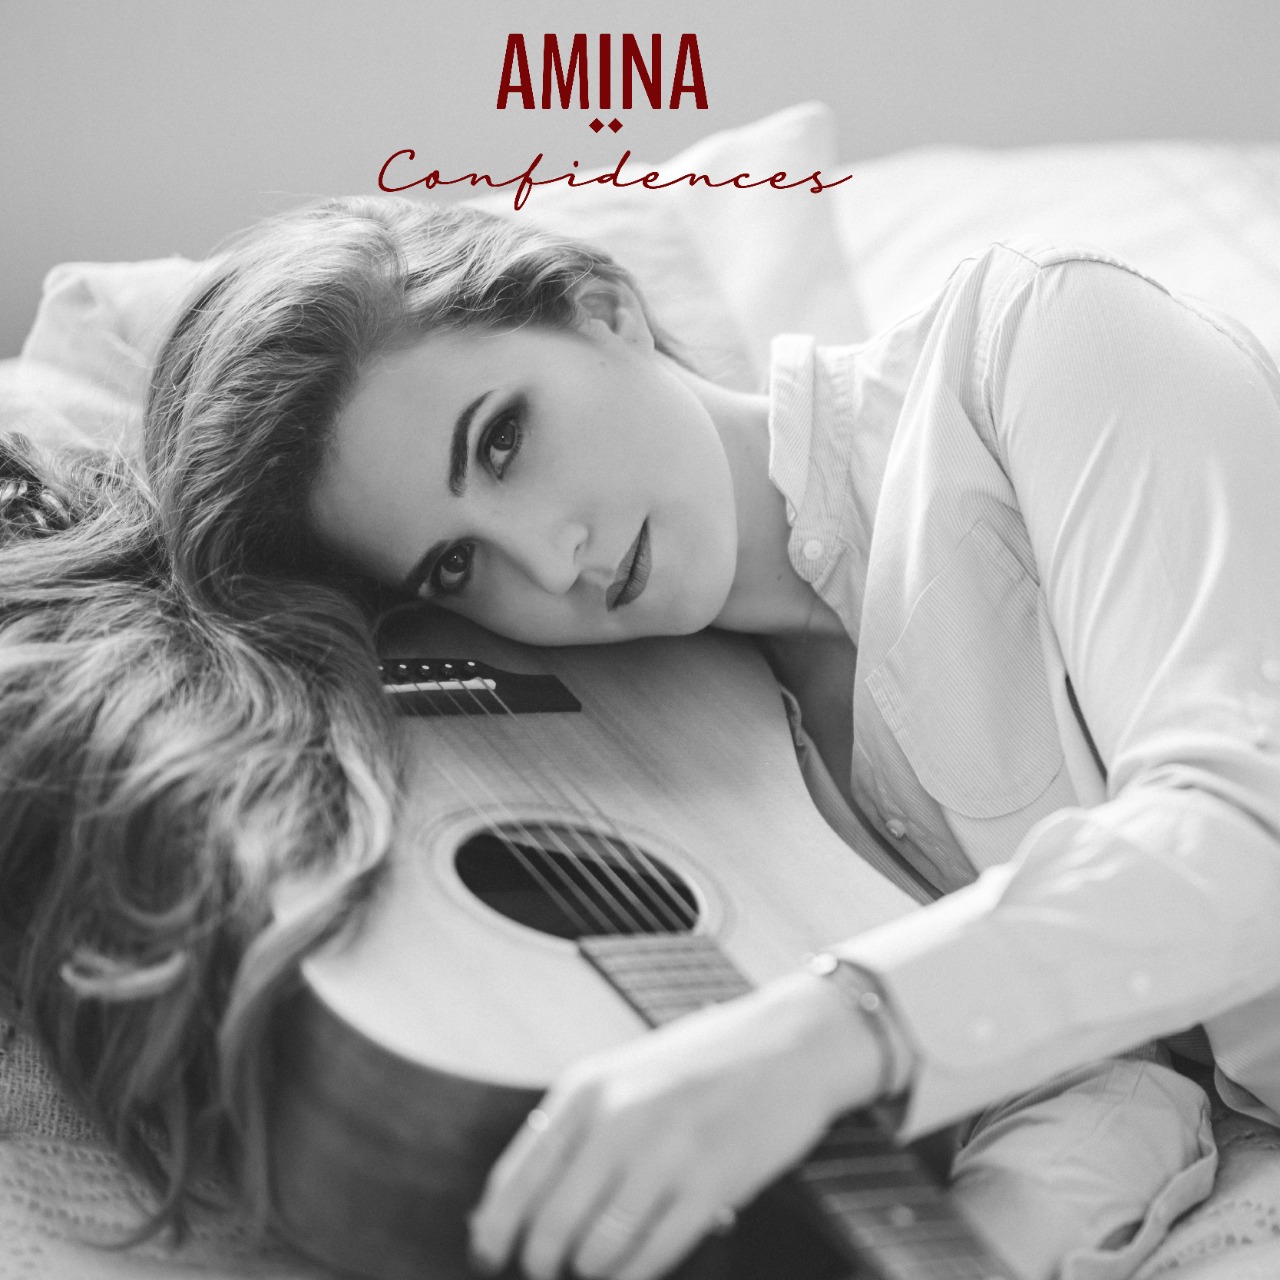 Un jour, une œuvre : Amina met ses «confidences» en musique (et c’est beau)